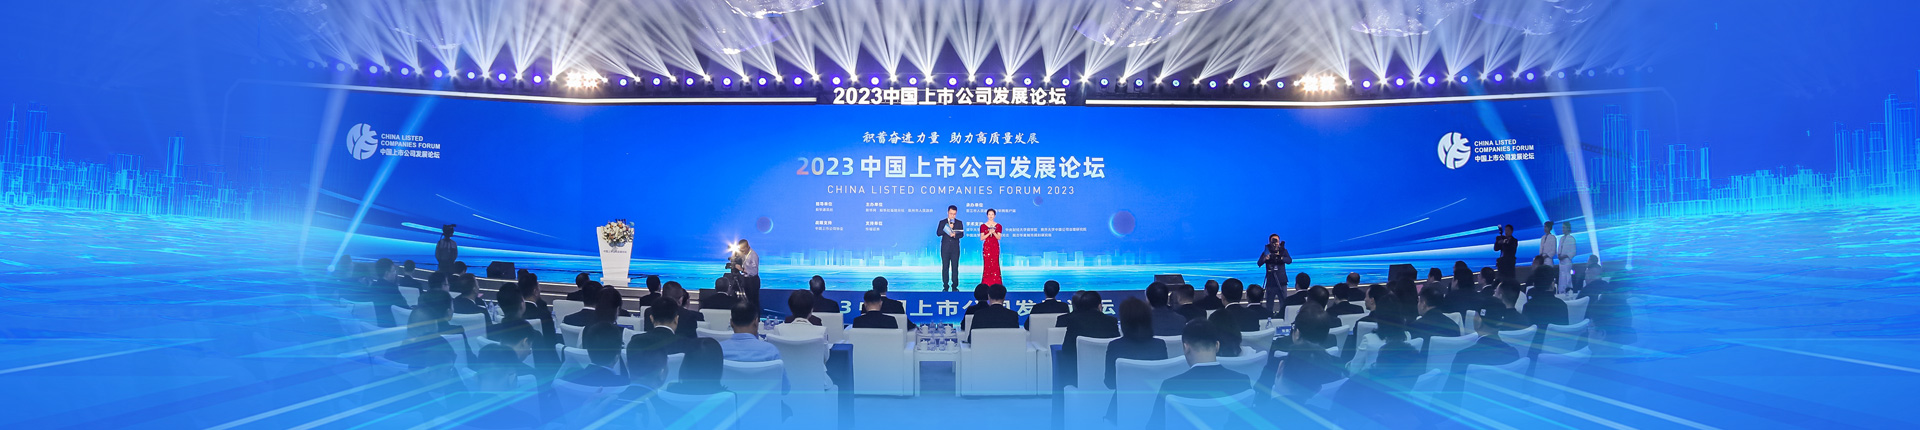 2023中國上市公司發展論壇舉行